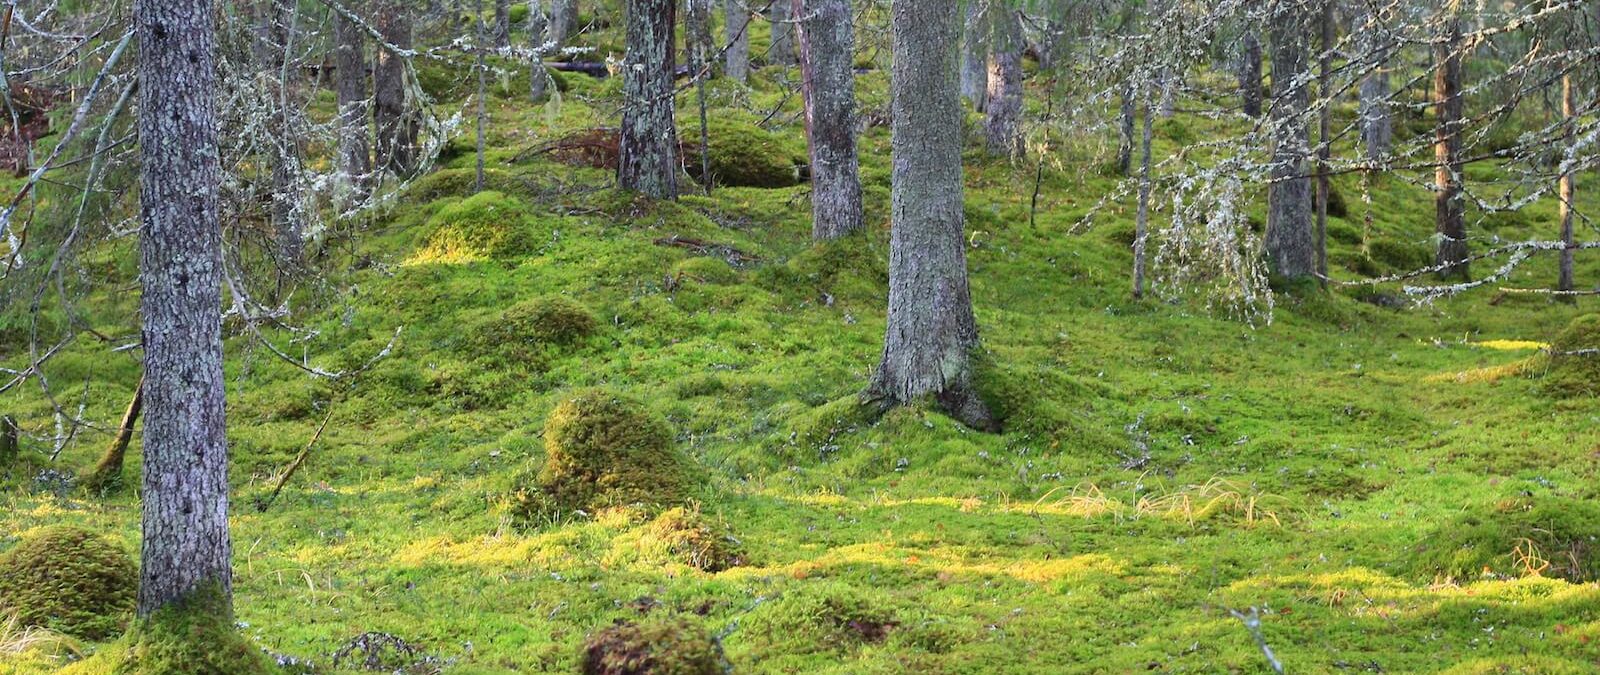 Grön mossklädd skogsdunge med gamla träd där det hänger lavar från de glesa grenarna.